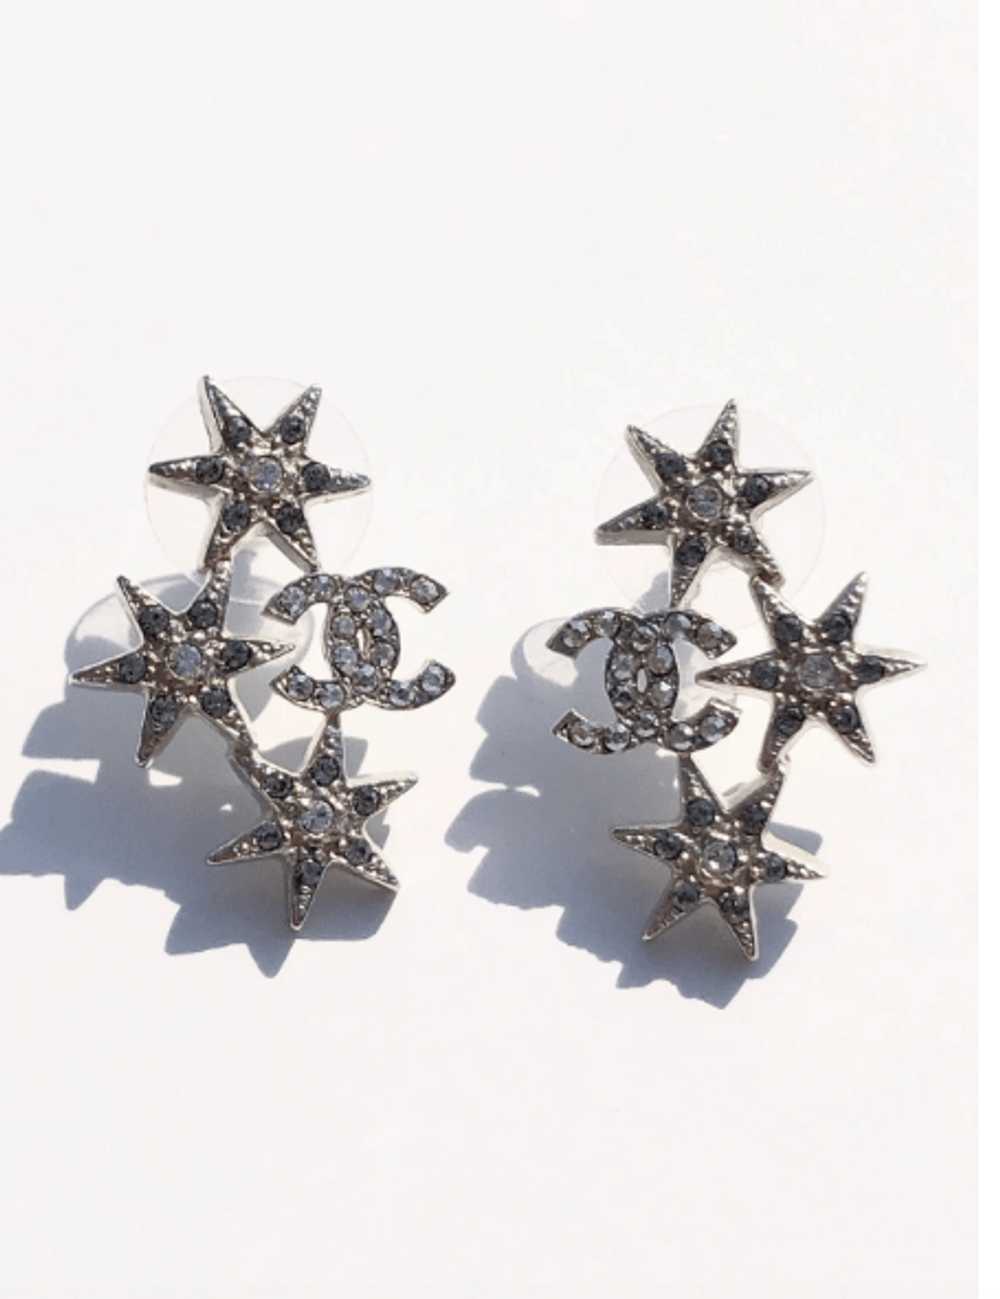 CHANEL+Silver+Pearl+Drop+Black+Diamond+Dangle+Earrings+HALLMARK+Authentic  Chanel  stud earrings, Pearl earrings outfit, Black diamond dangle earrings